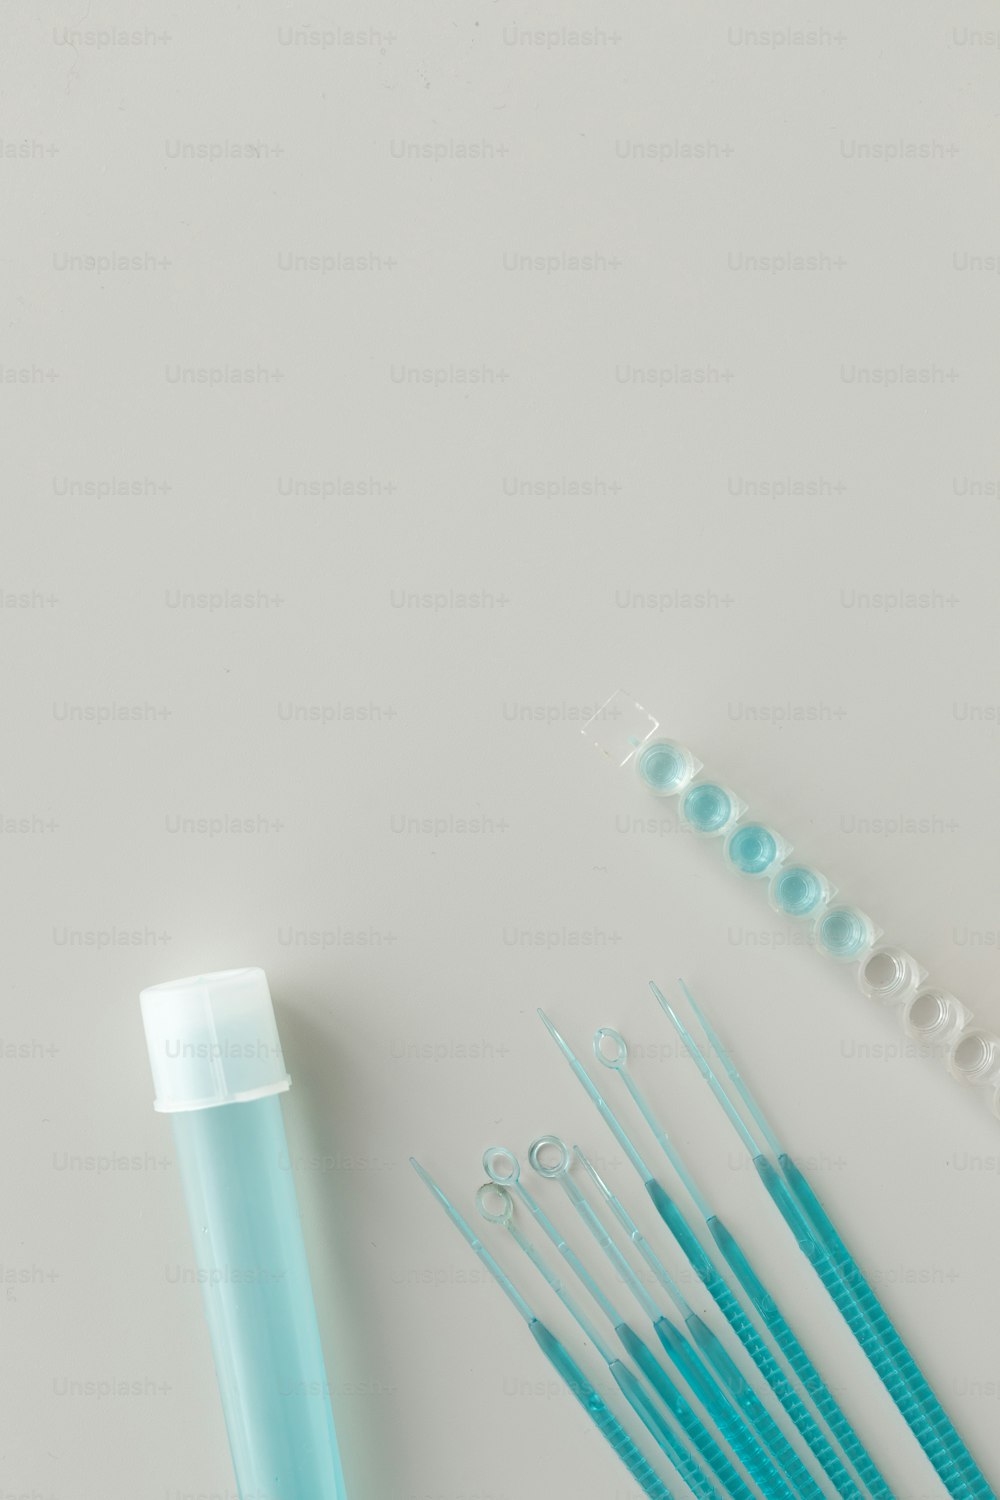 Eine Gruppe blauer Zahnbürsten sitzt neben einer Tube Zahnpasta